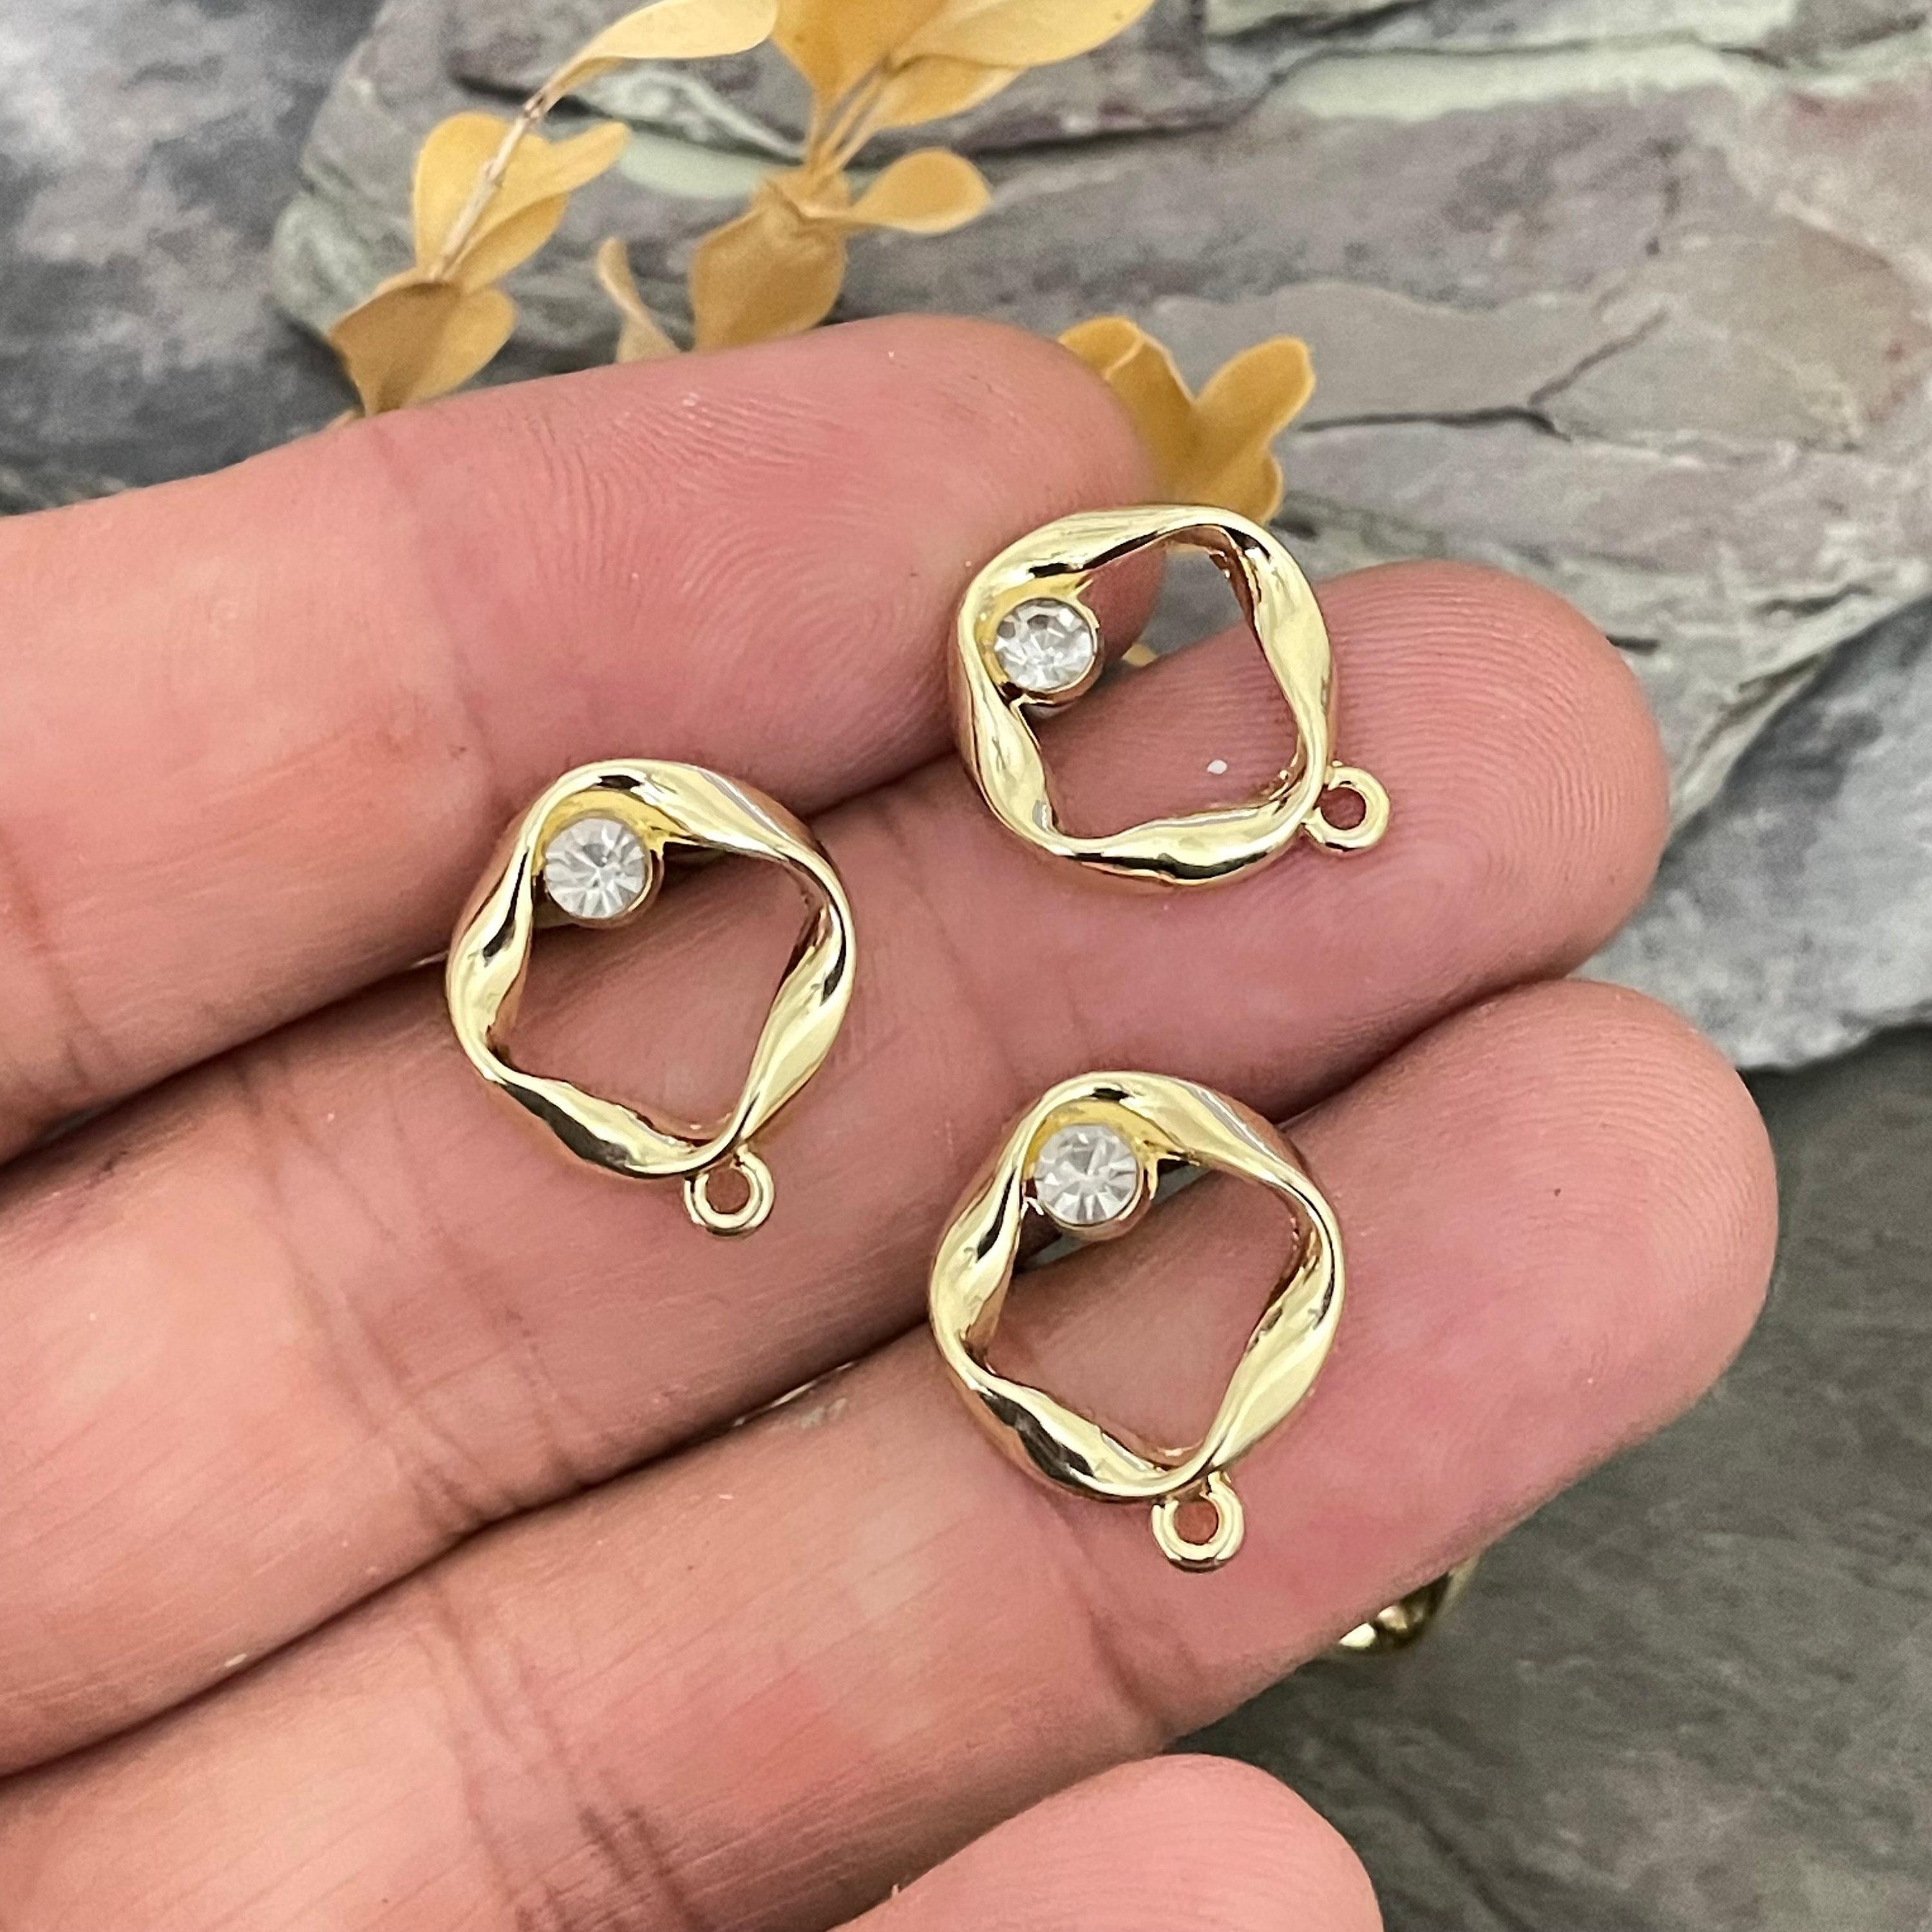 Brass Earring Stud with Zircon - Circle Earring Post - Brass Earring